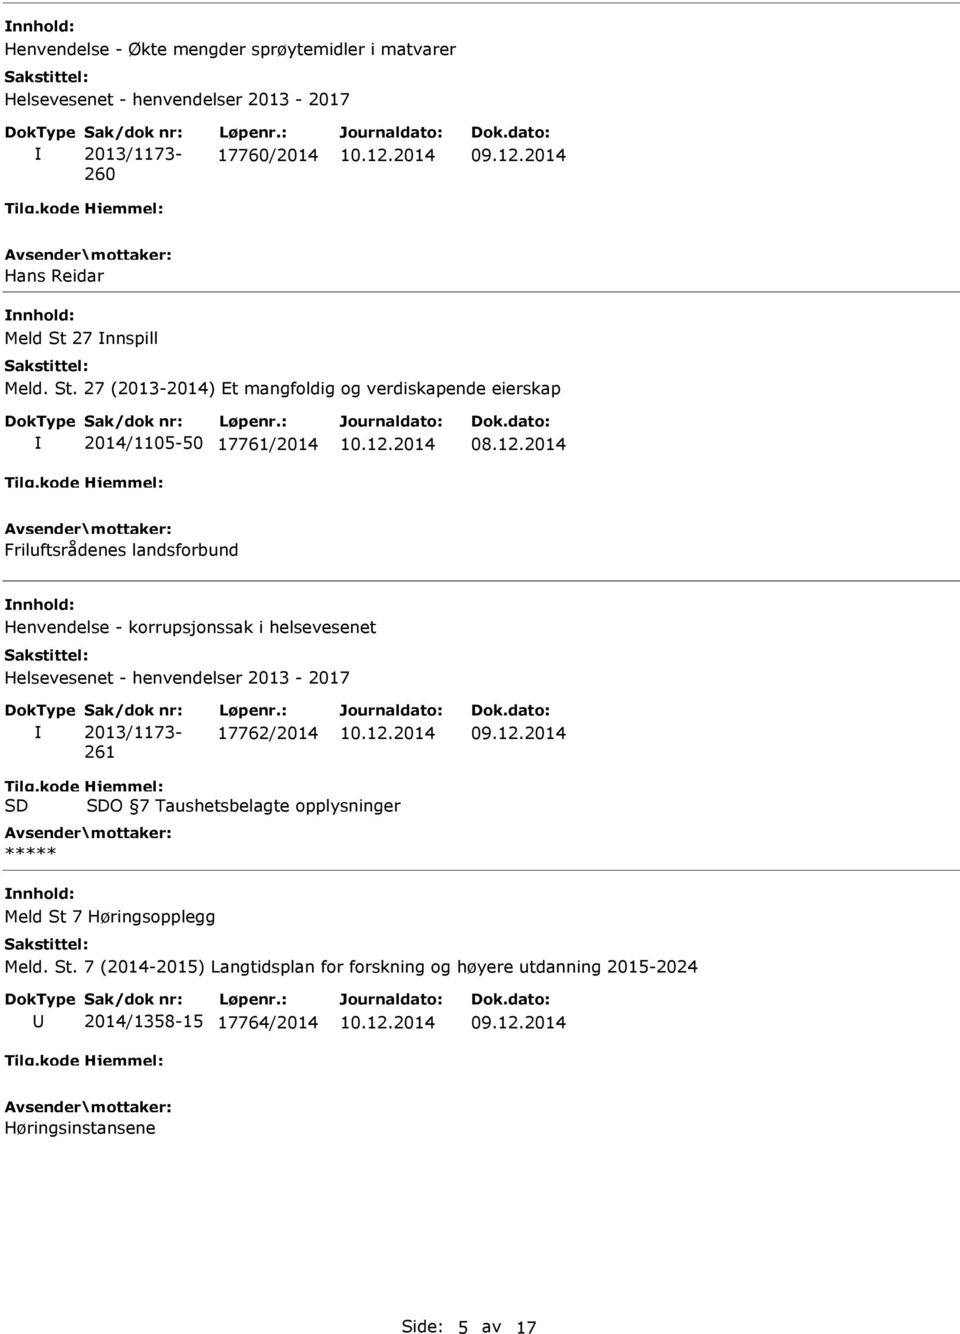 2014 Friluftsrådenes landsforbund Henvendelse - korrupsjonssak i helsevesenet Helsevesenet - henvendelser 2013-2017 Sak/dok nr: 2013/1173-261 Løpenr.